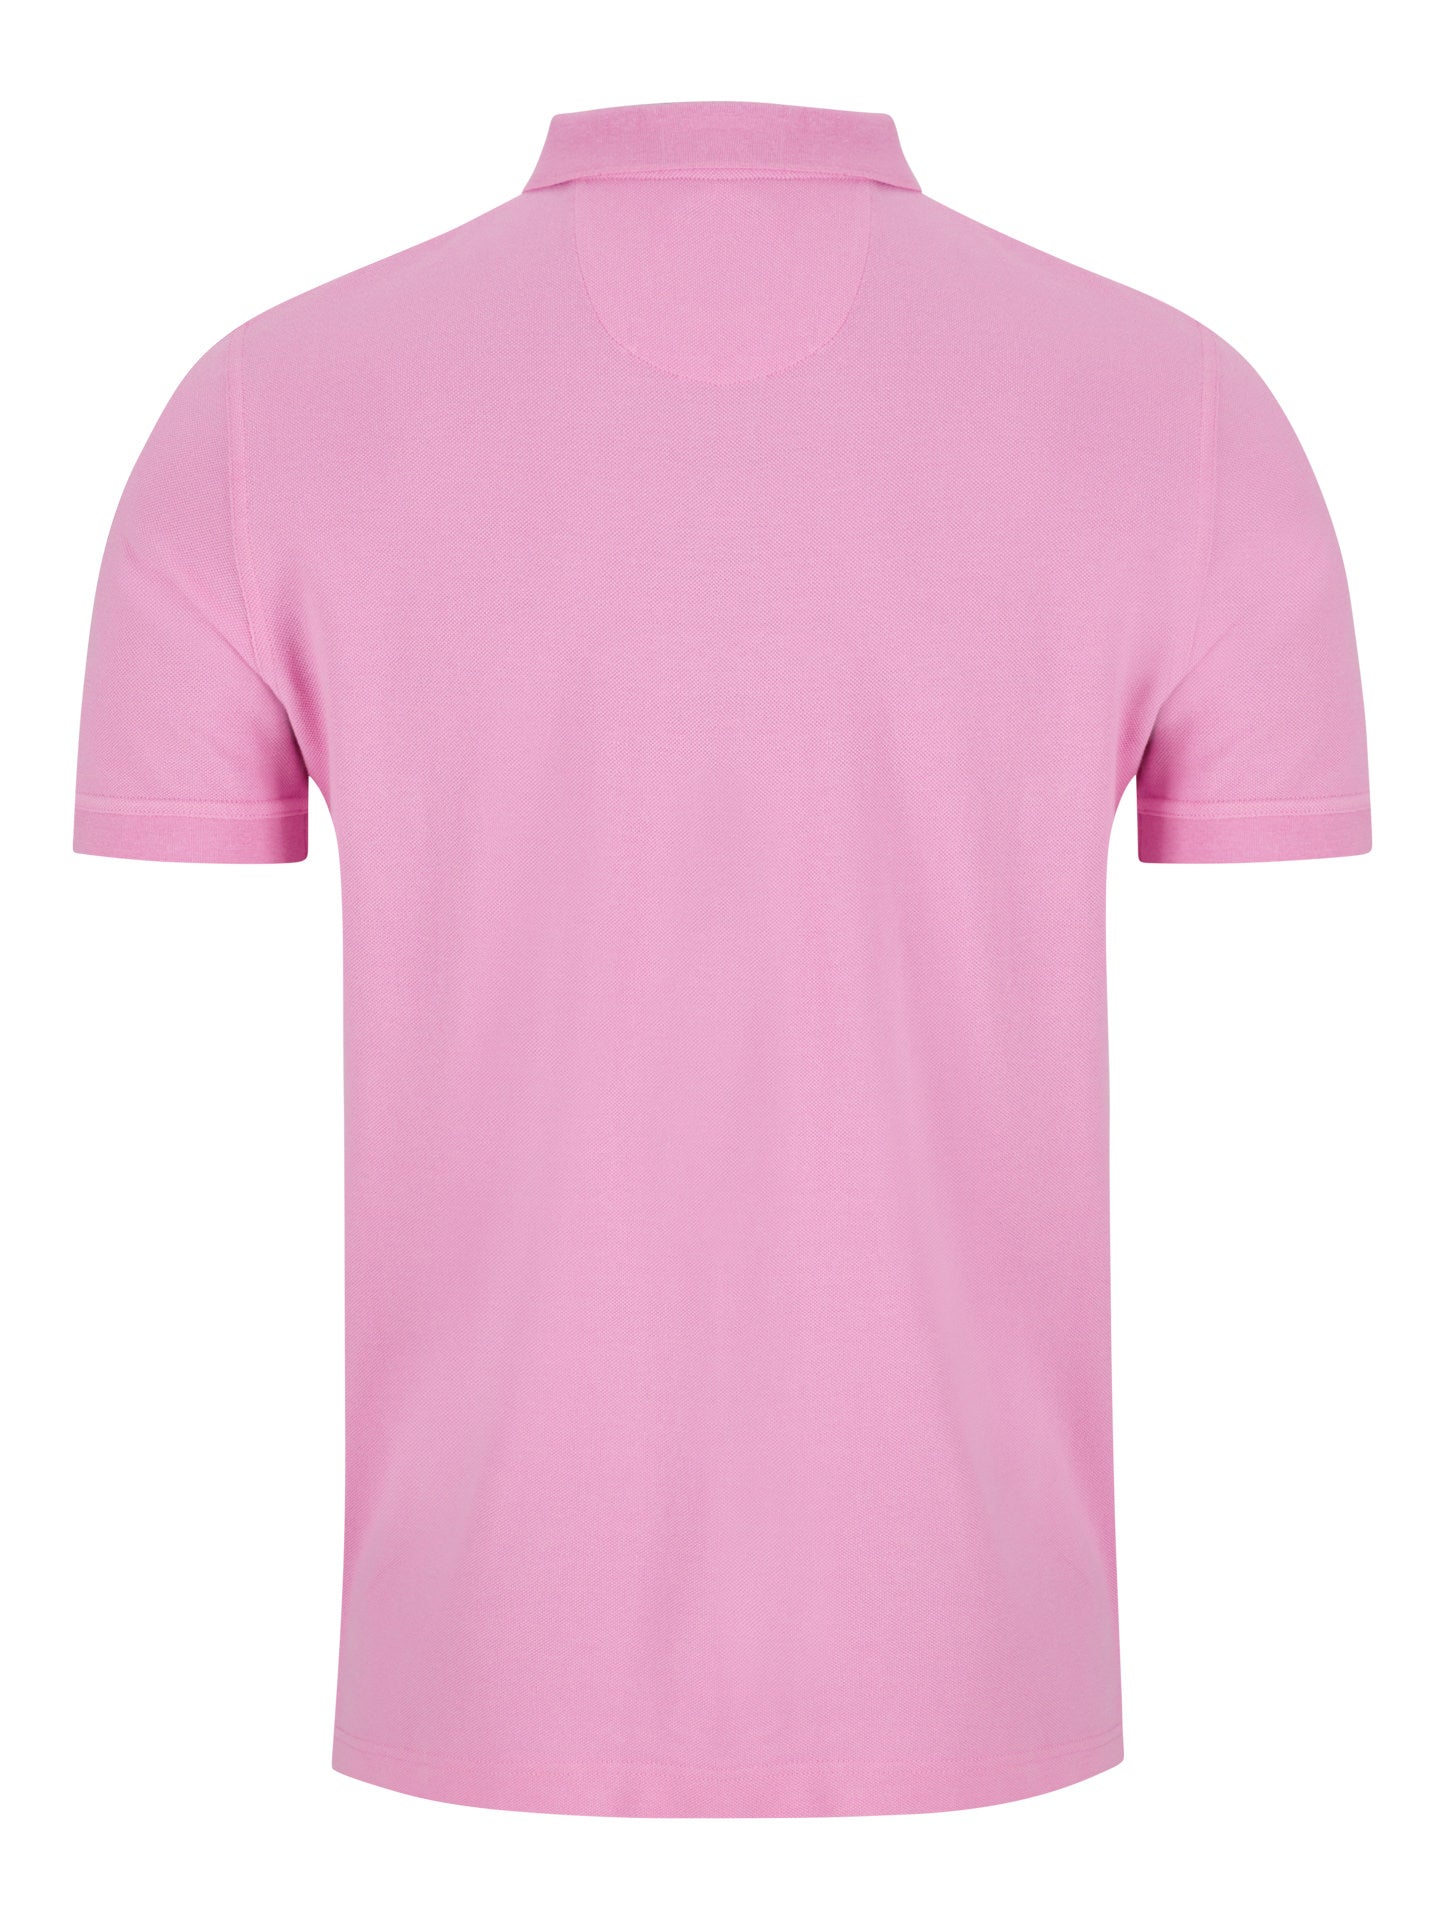 Danny Cyclamen Polo Shirt-Back view